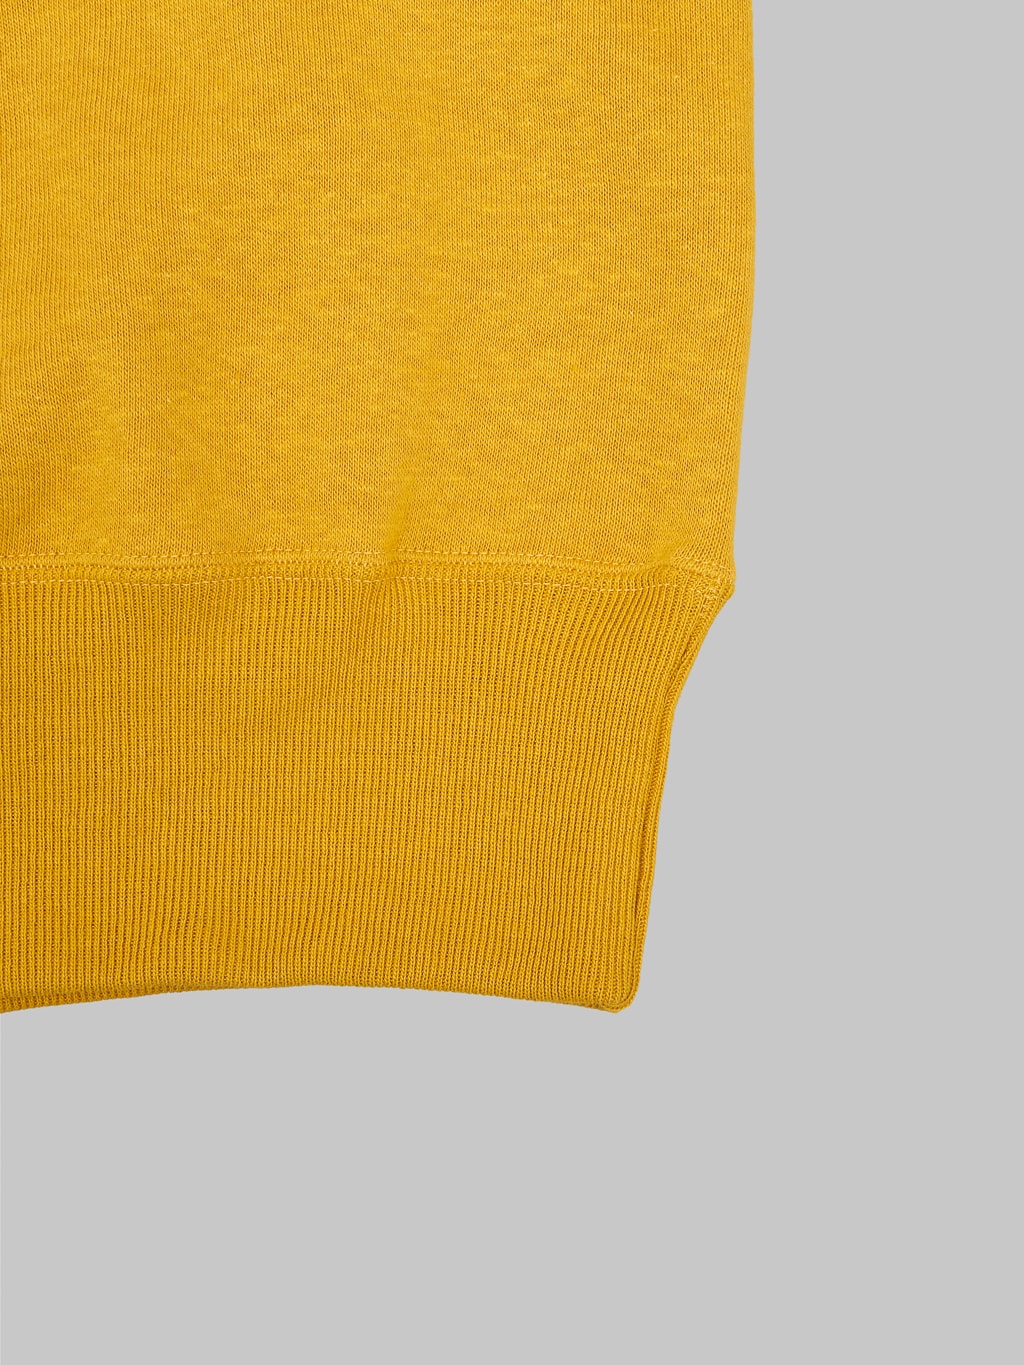 Denime By Warehouse & Co. "Lot. 261" 4-Needle Raglan Sweatshirt Yellow